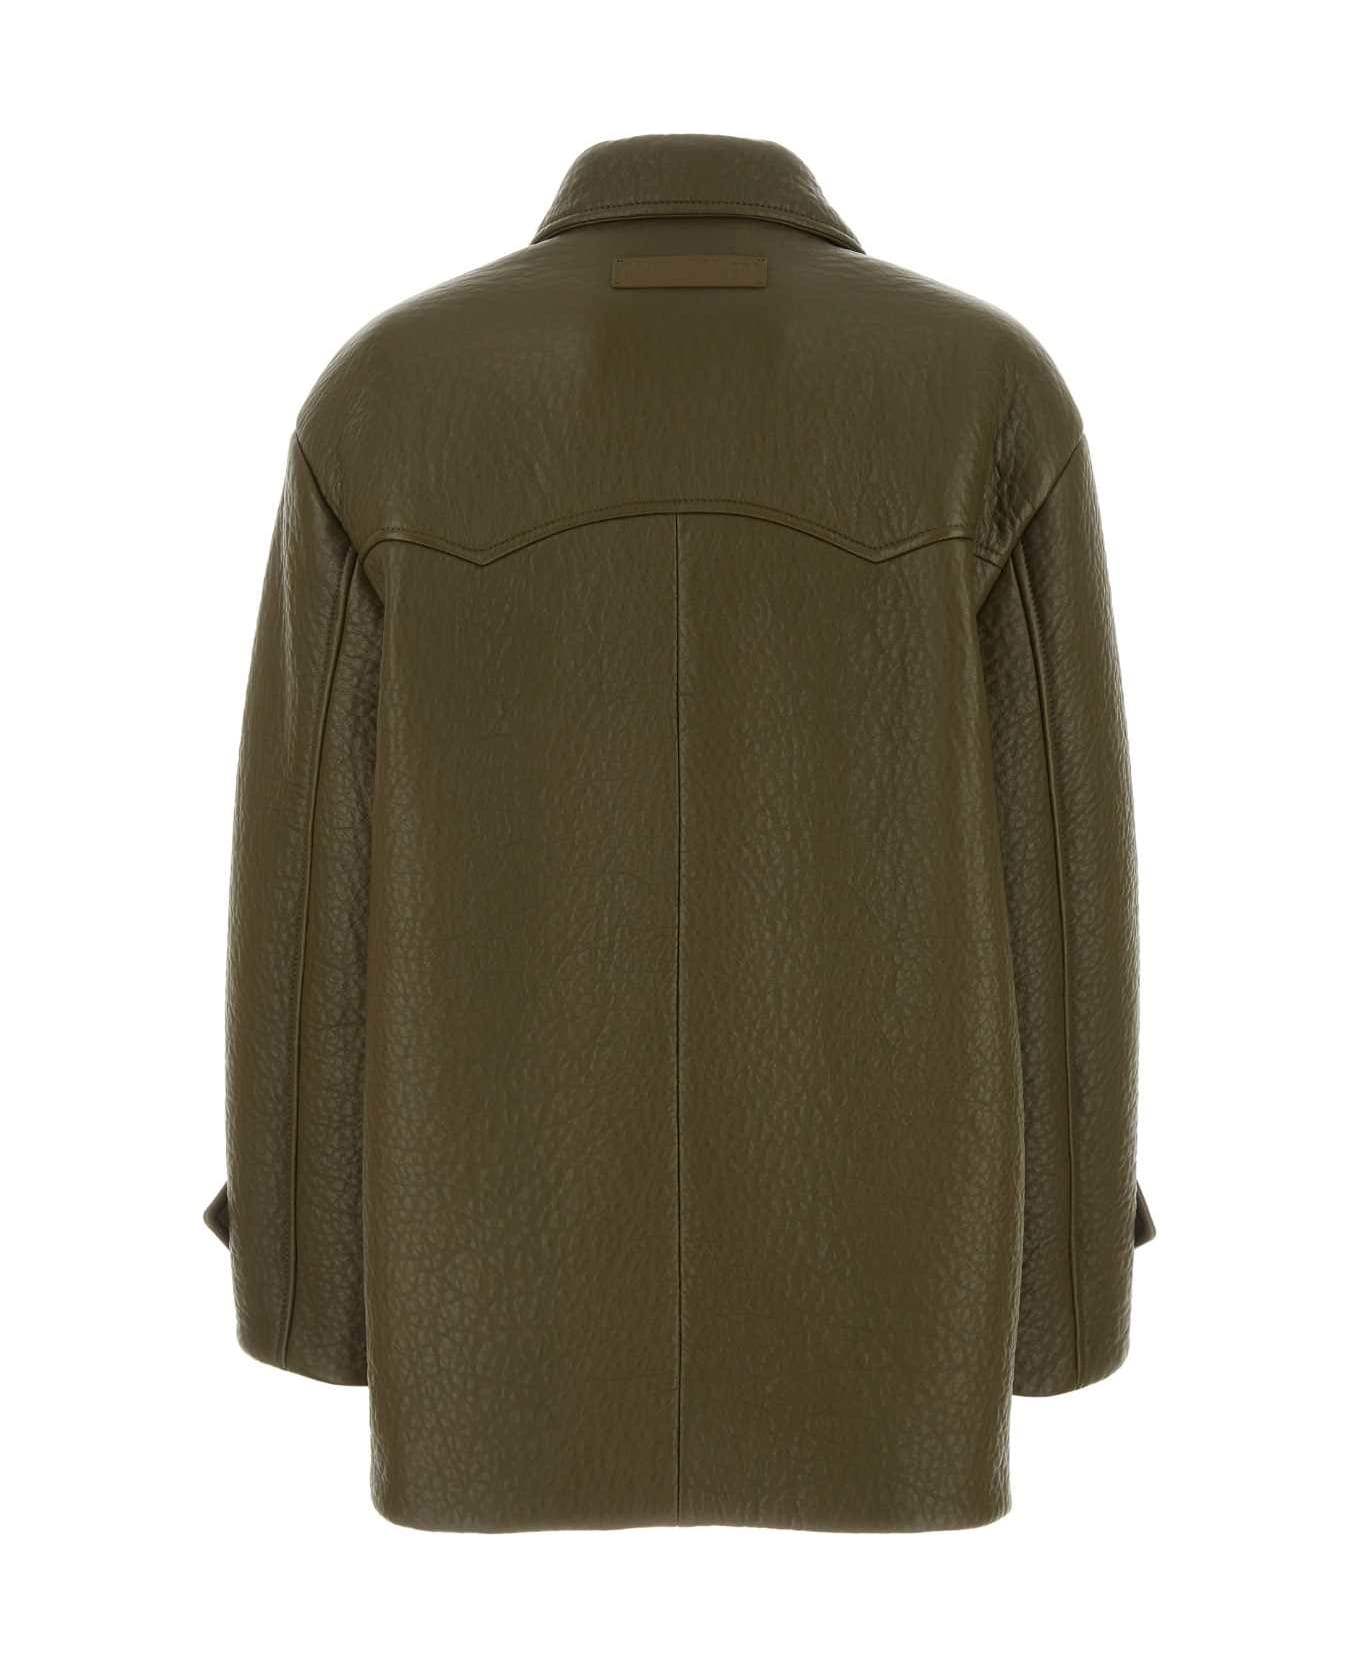 Miu Miu Army Green Nappa Leather Coat - MILITARE コート